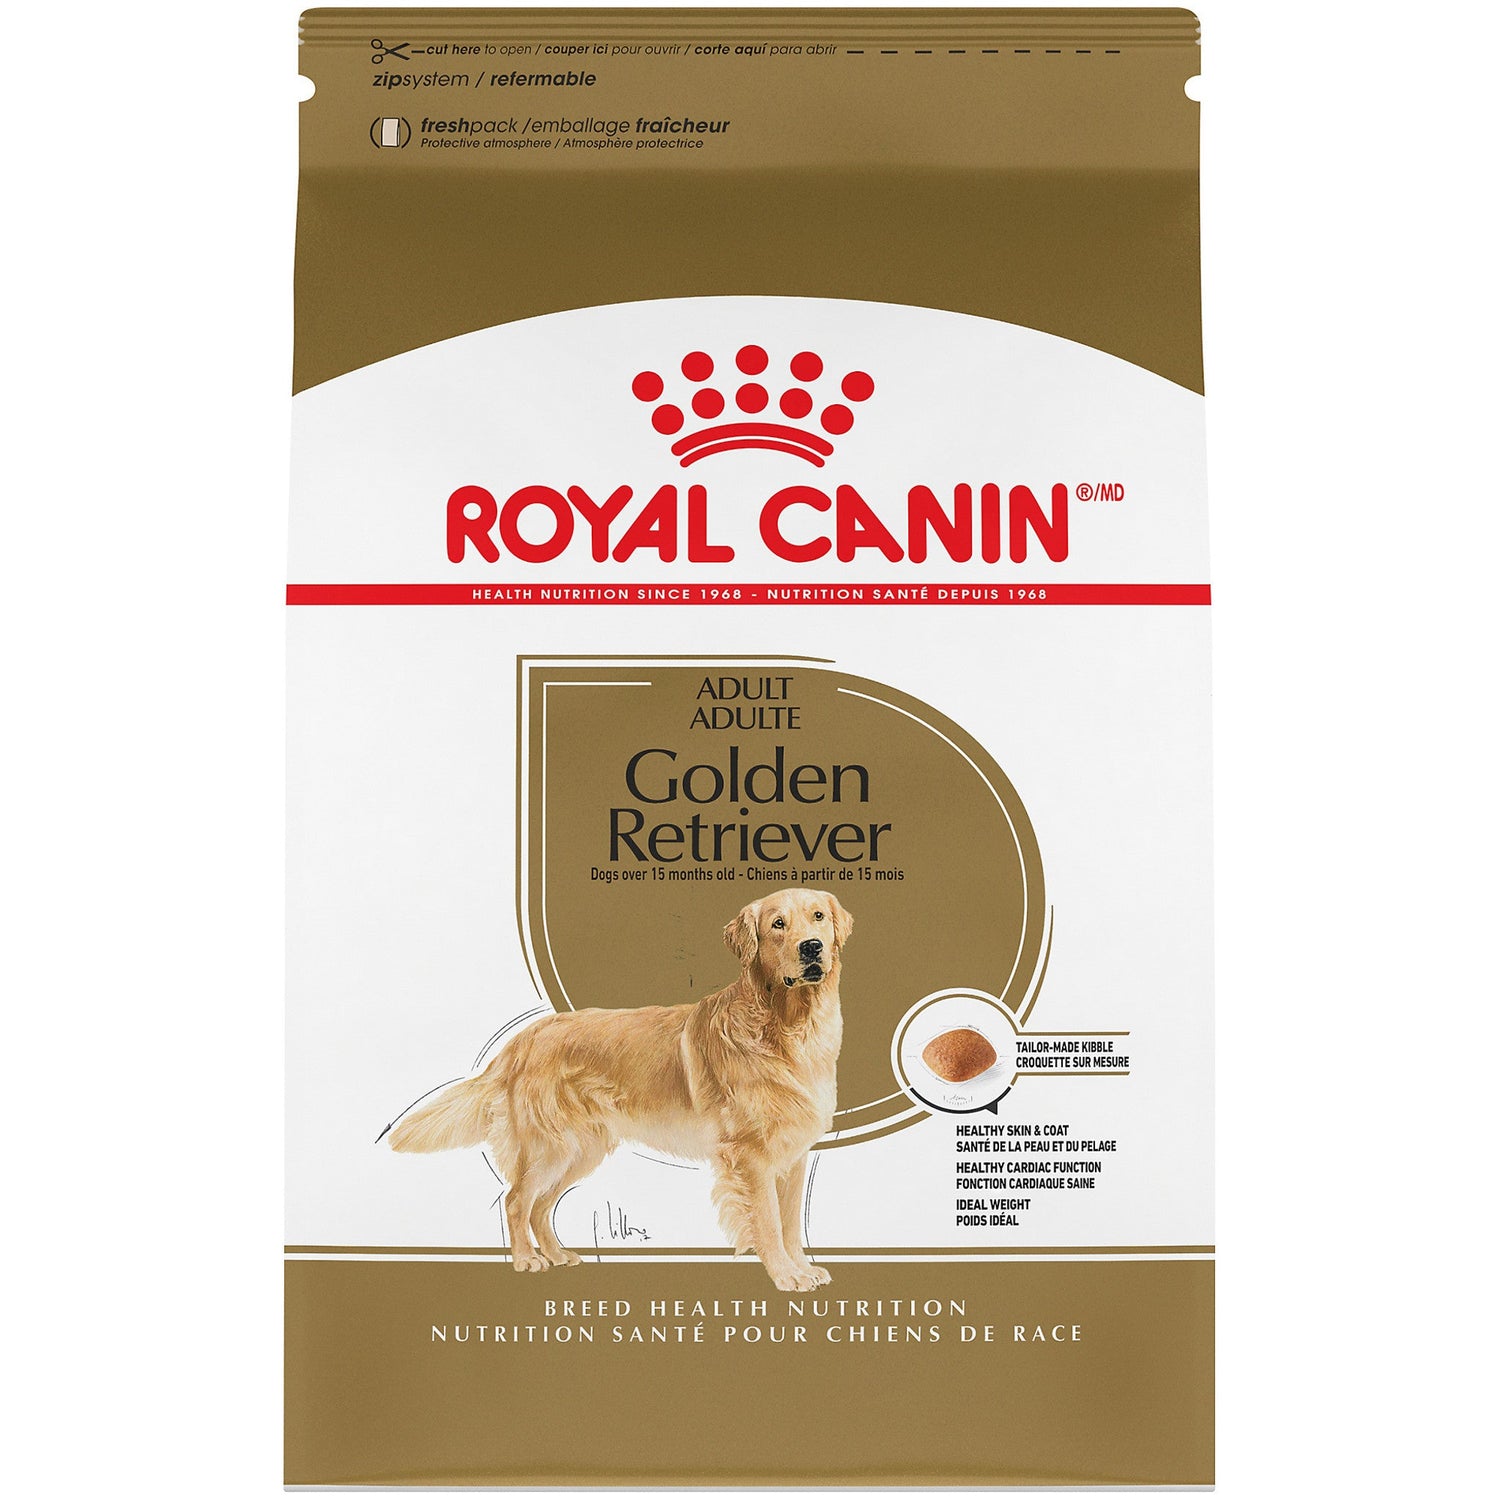 ROYAL CANIN Nutrition Santé de Race GOLDEN RETRIEVER ADULTE – nourriture sèche pour chiens